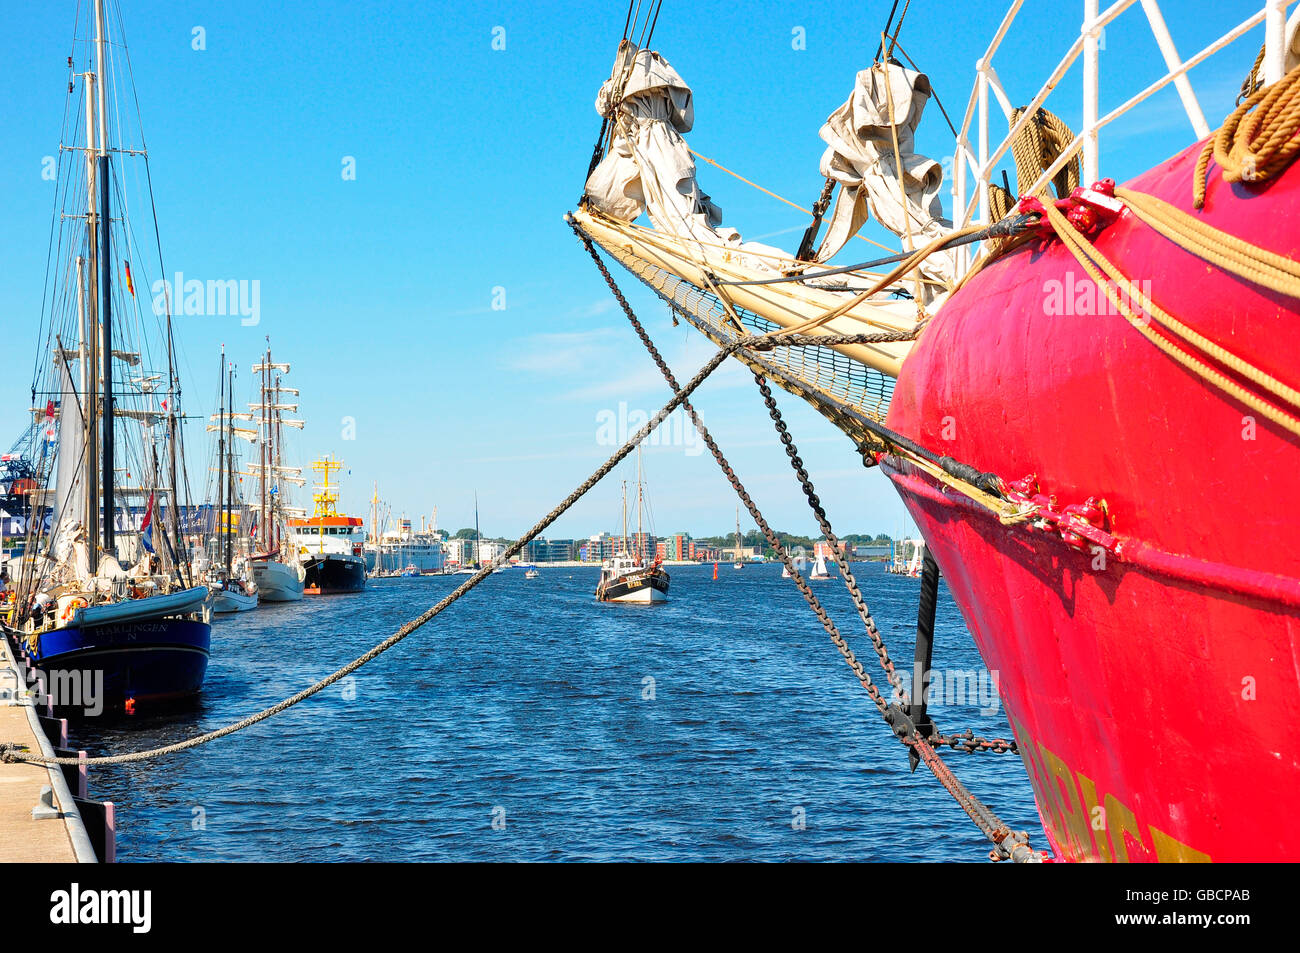 Seehafen, Schiffsanlegestelle, wharf, Rostock, Mecklenburg-West Pomerania, Deutschland Stockfoto